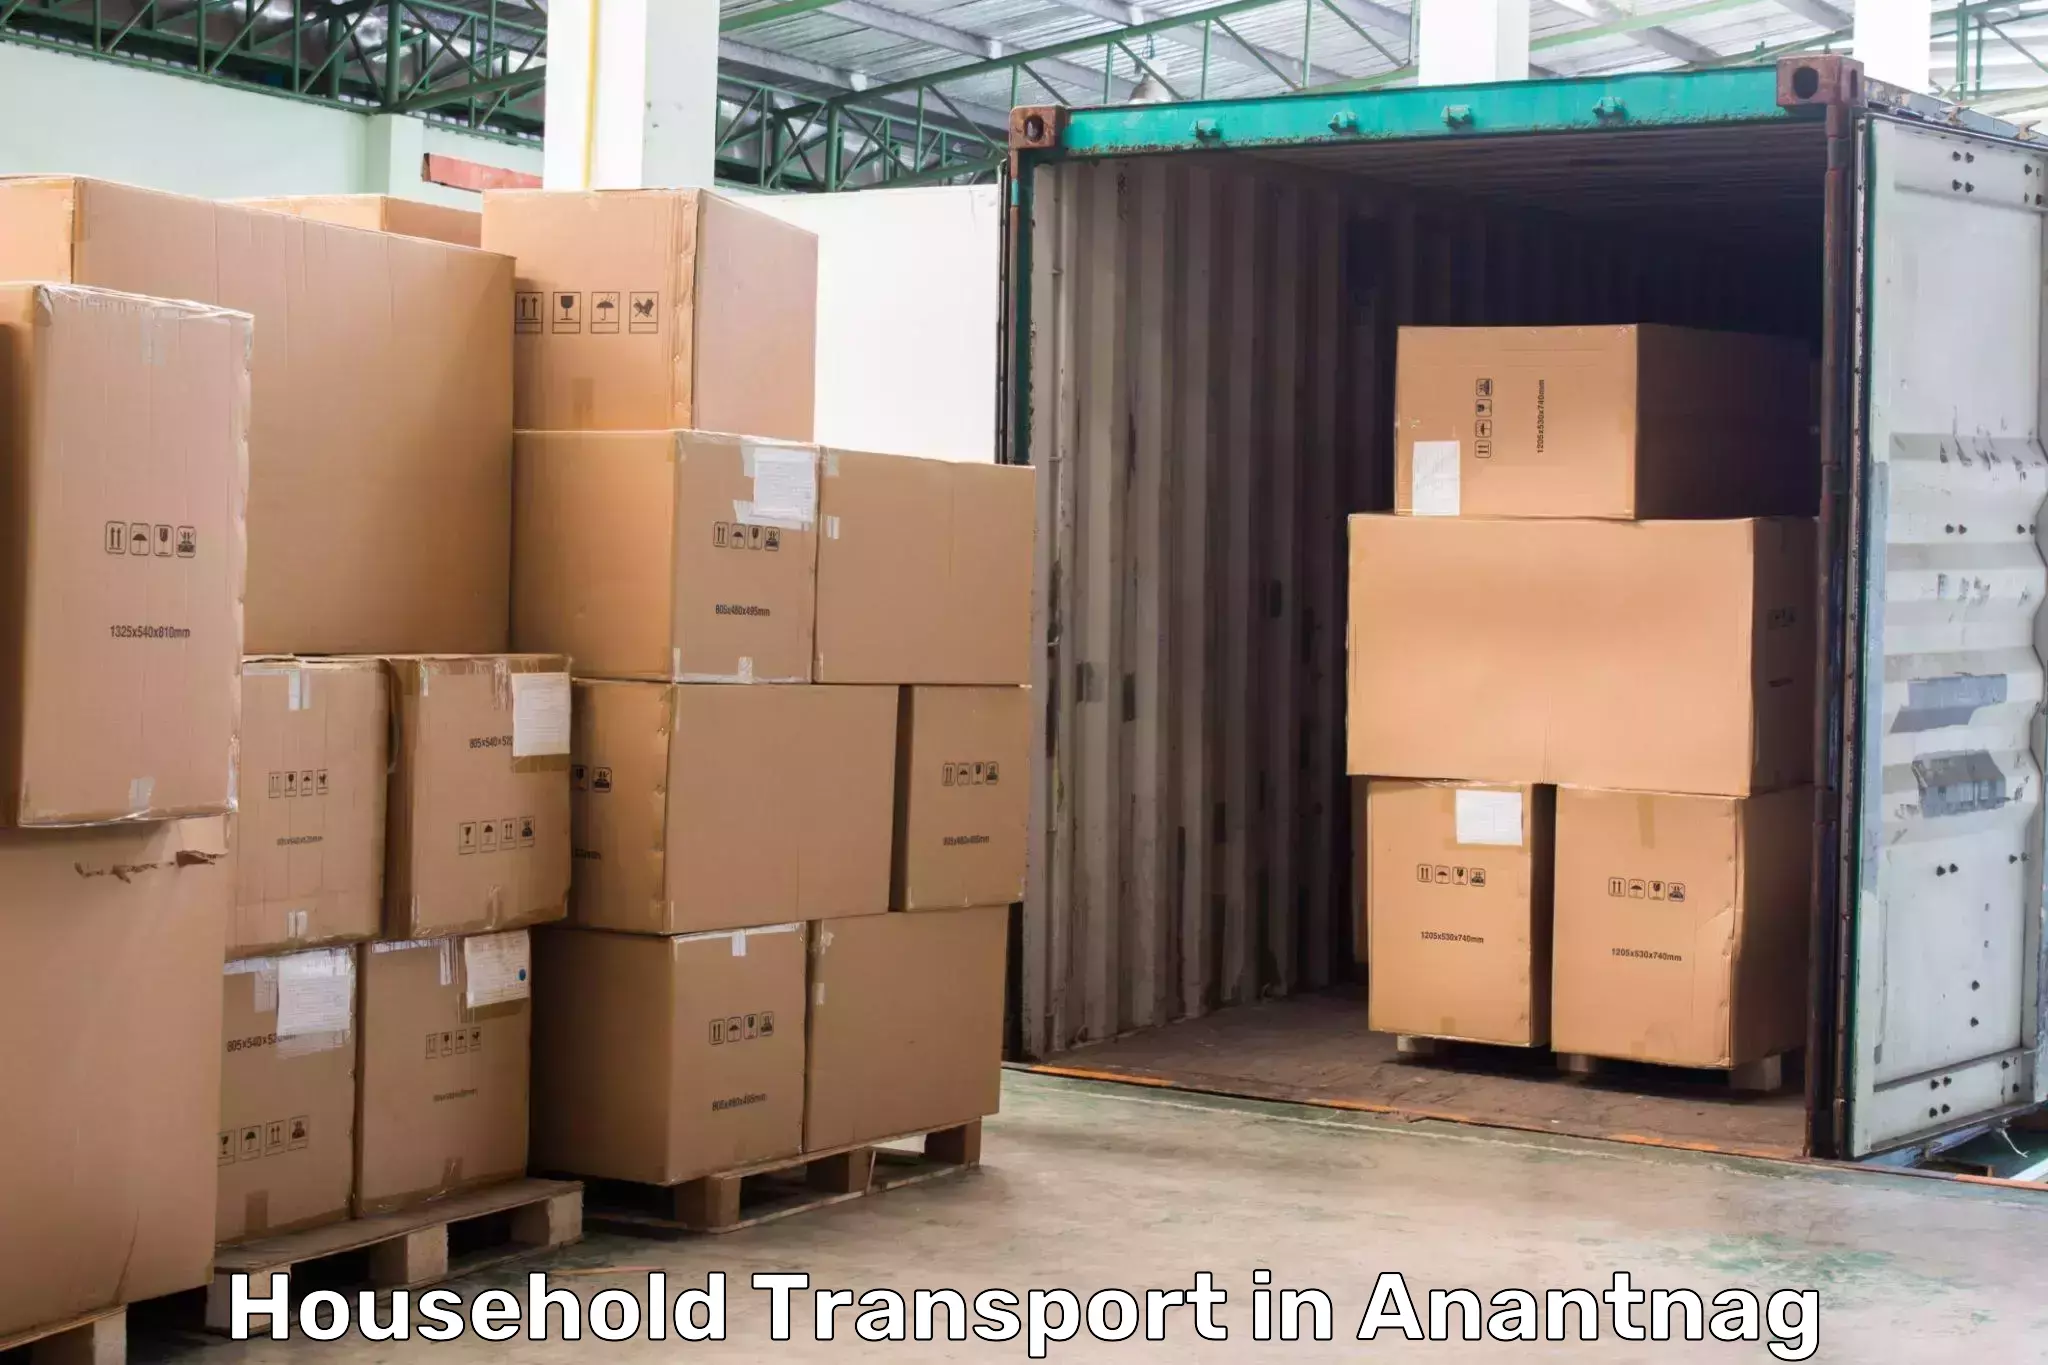 Furniture transport professionals in Anantnag